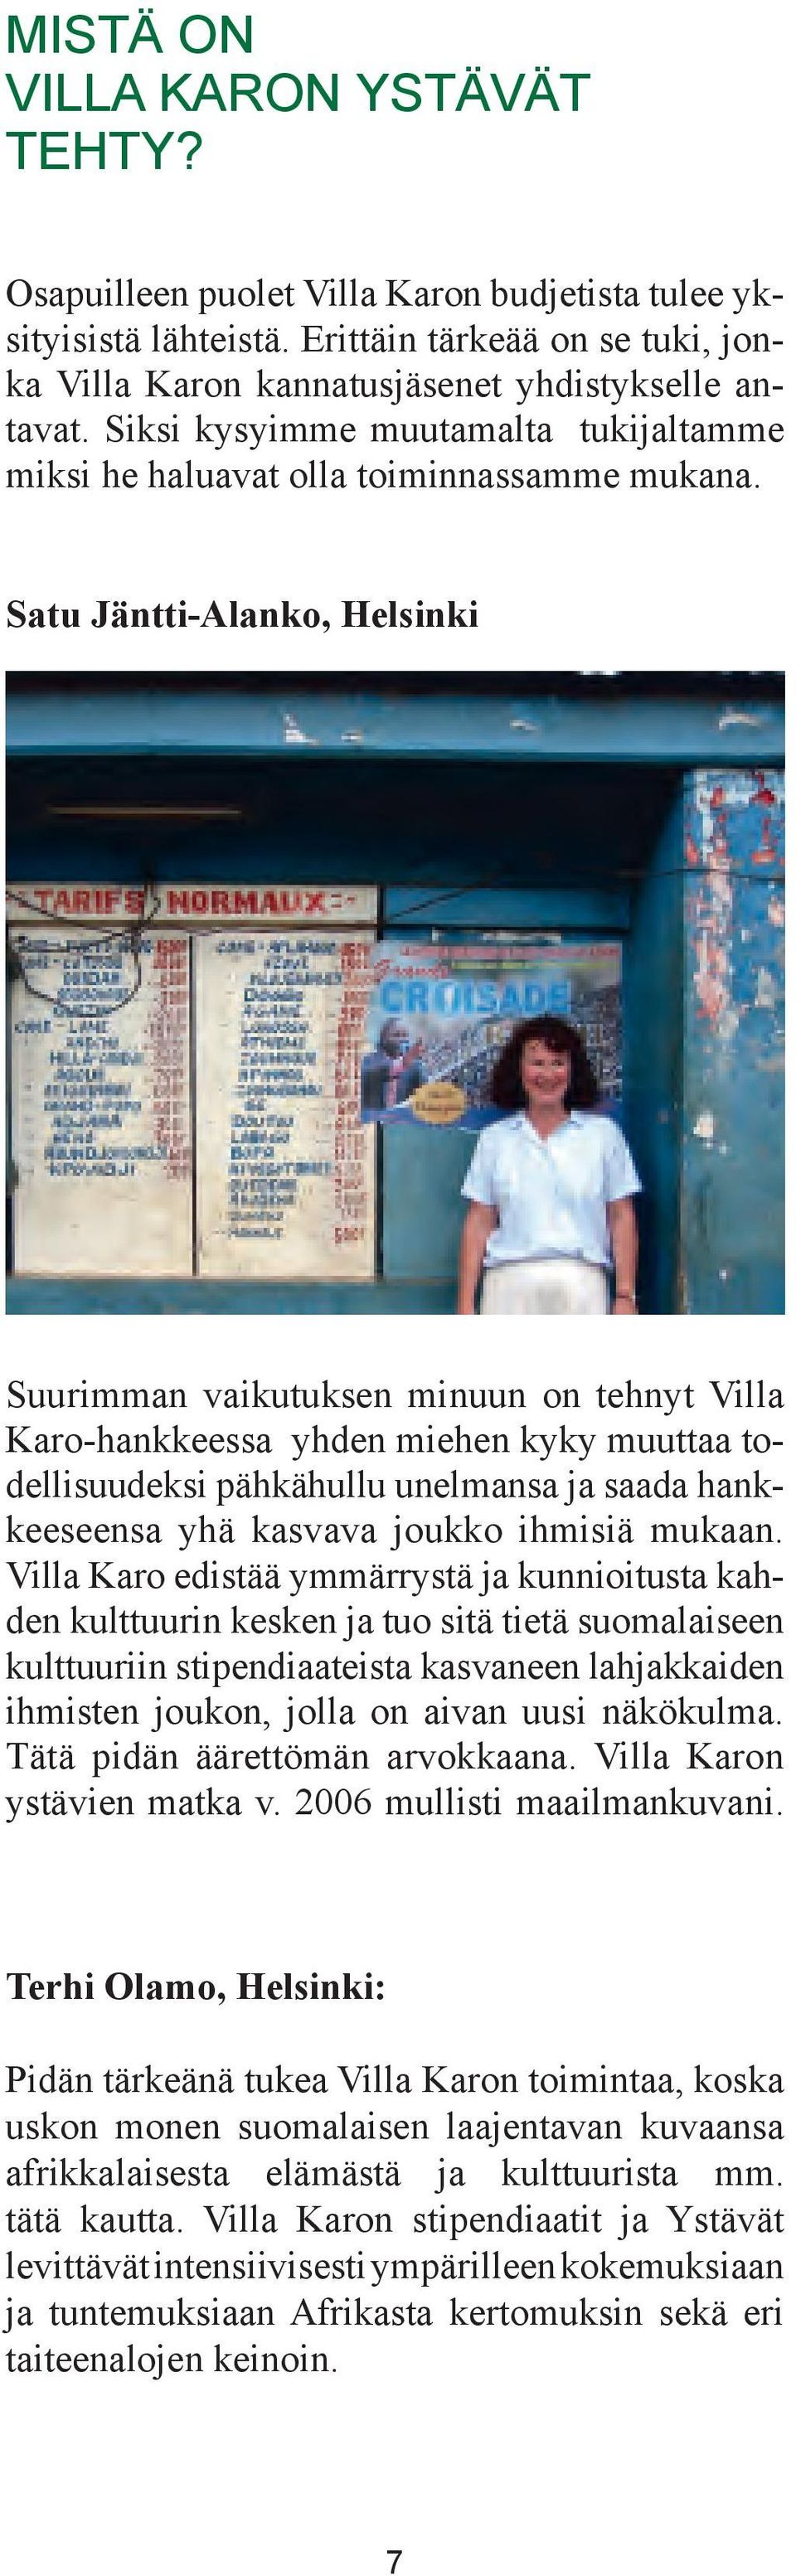 Satu Jäntti-Alanko, Helsinki Suurimman vaikutuksen minuun on tehnyt Villa Karo-hankkeessa yhden miehen kyky muuttaa todellisuudeksi pähkähullu unelmansa ja saada hankkeeseensa yhä kasvava joukko